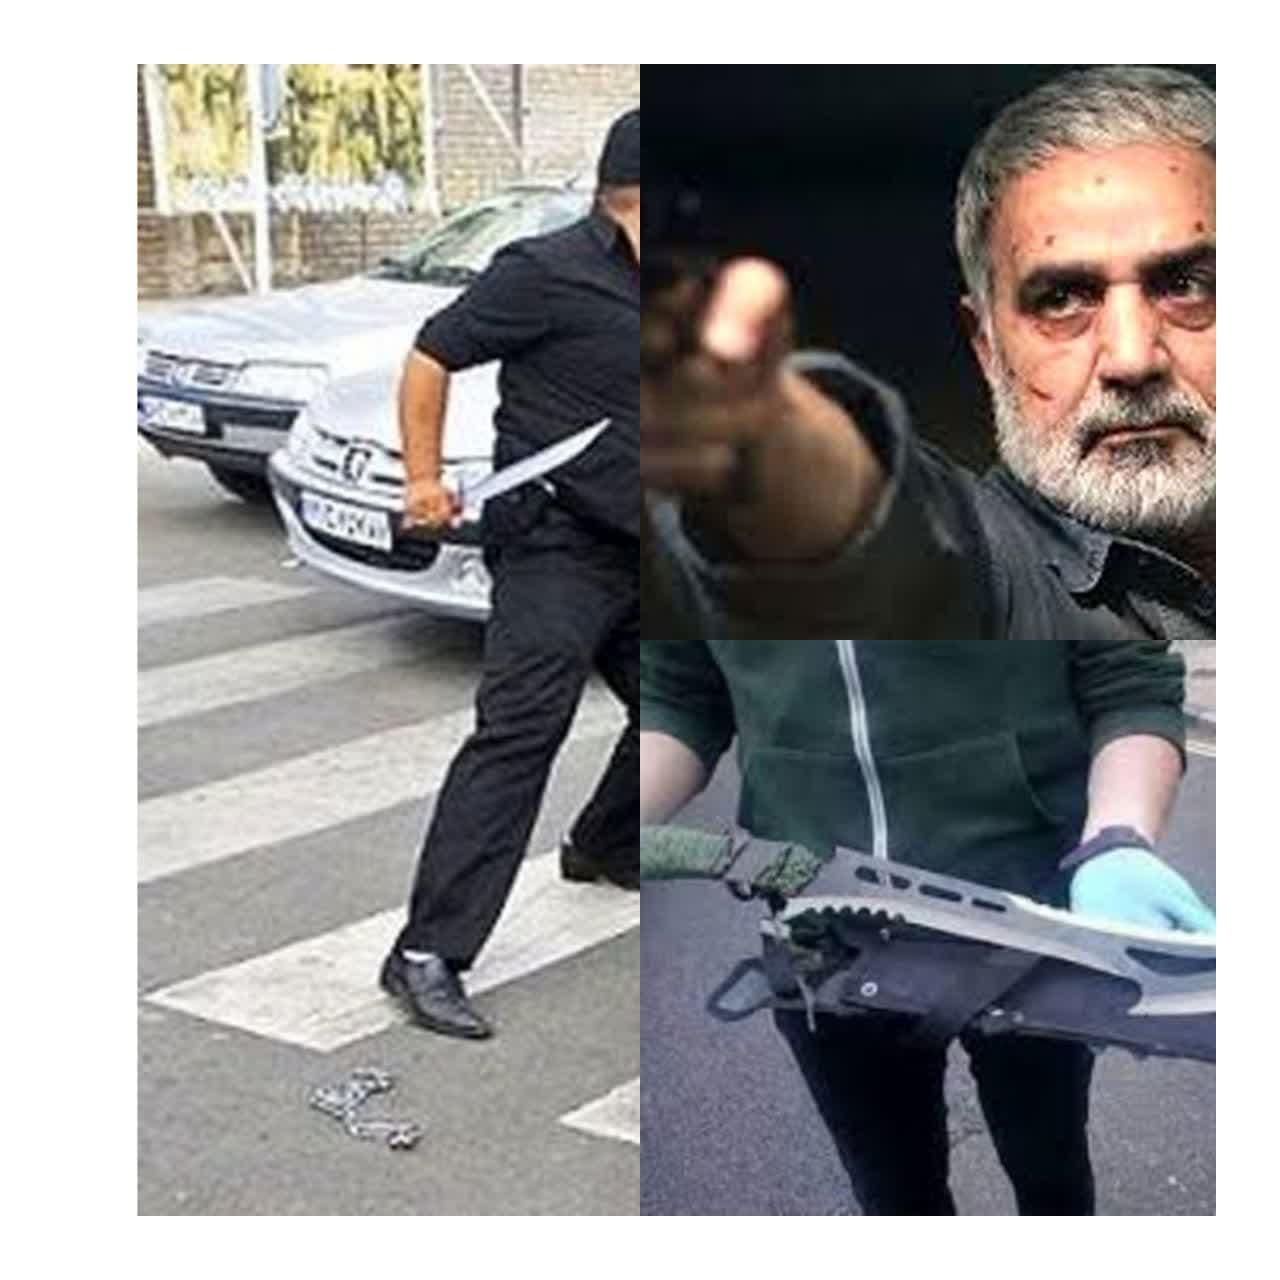 ماجرای حمله به پرویز پرستویی با قمه | پرستویی:قصد کشتنم را داشتند